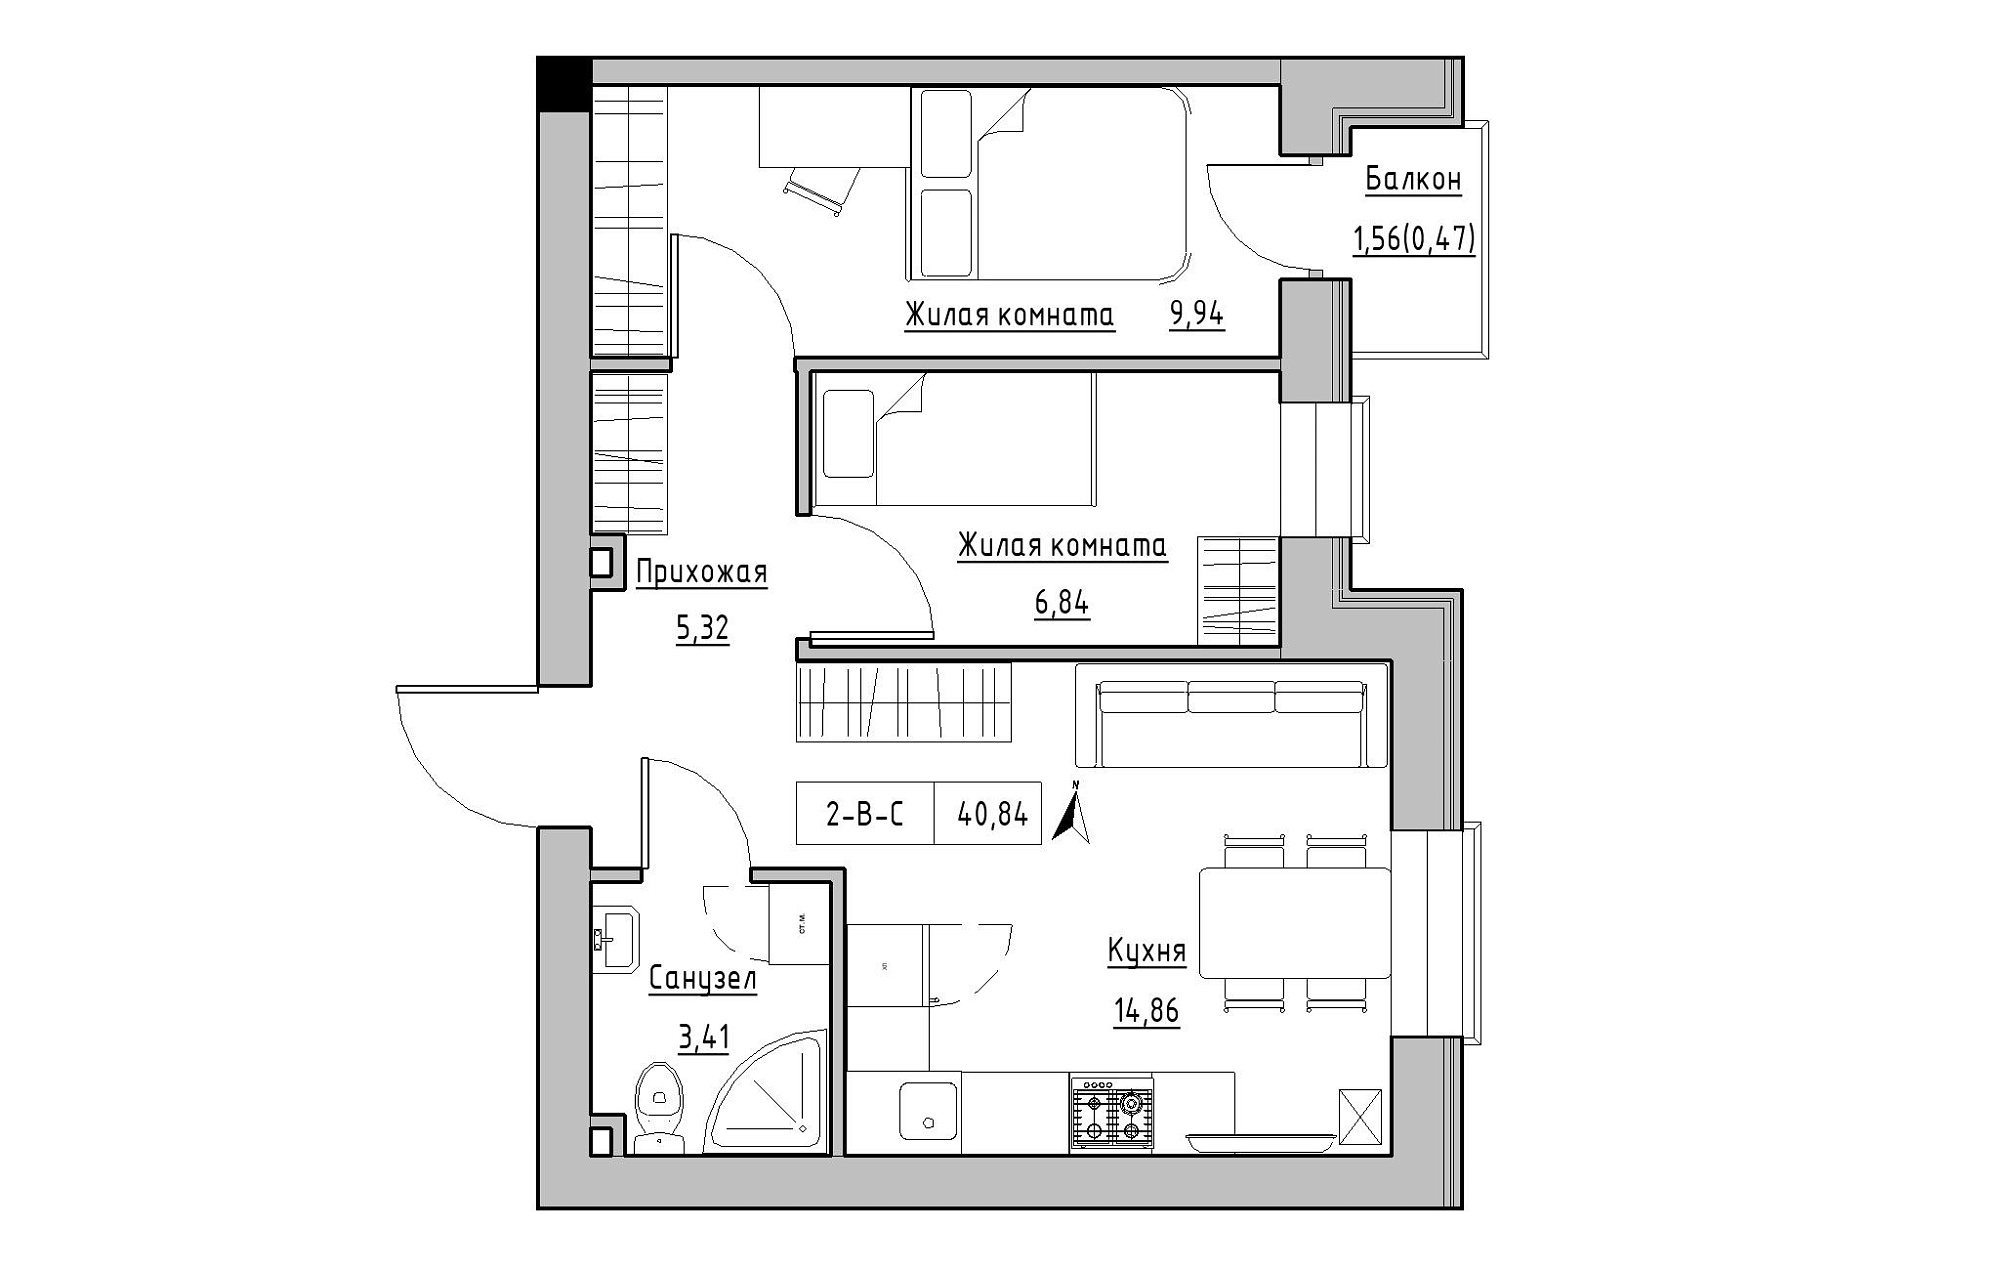 Планування 2-к квартира площею 40.84м2, KS-019-04/0006.